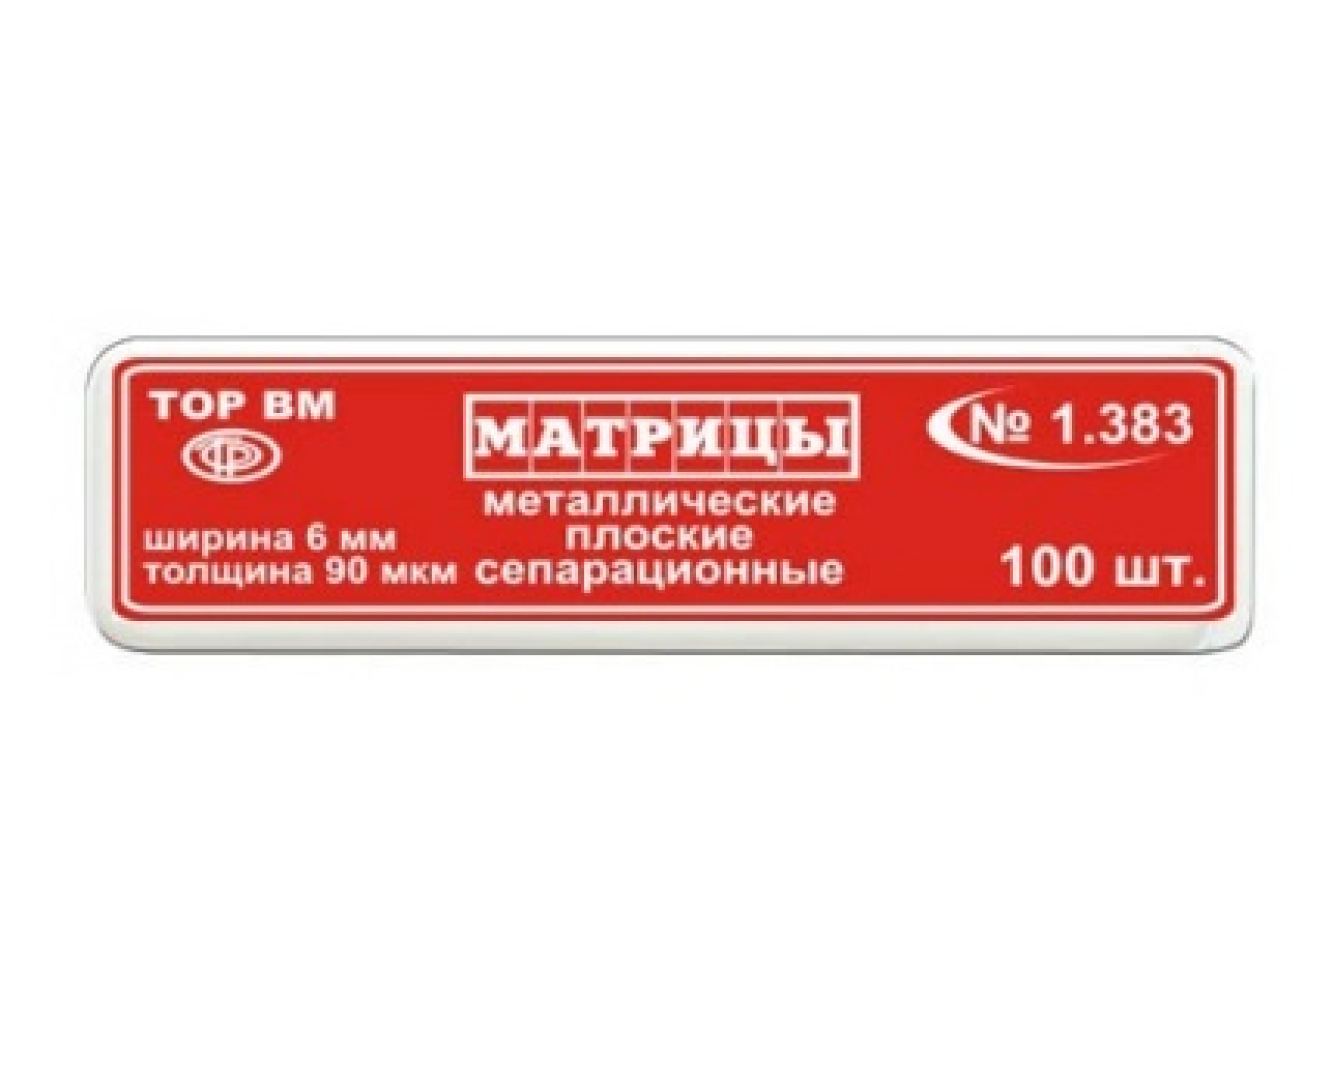 Матрицы металлические, плоские, сепарационные, 1.383, ТОР ВМ (Россия)